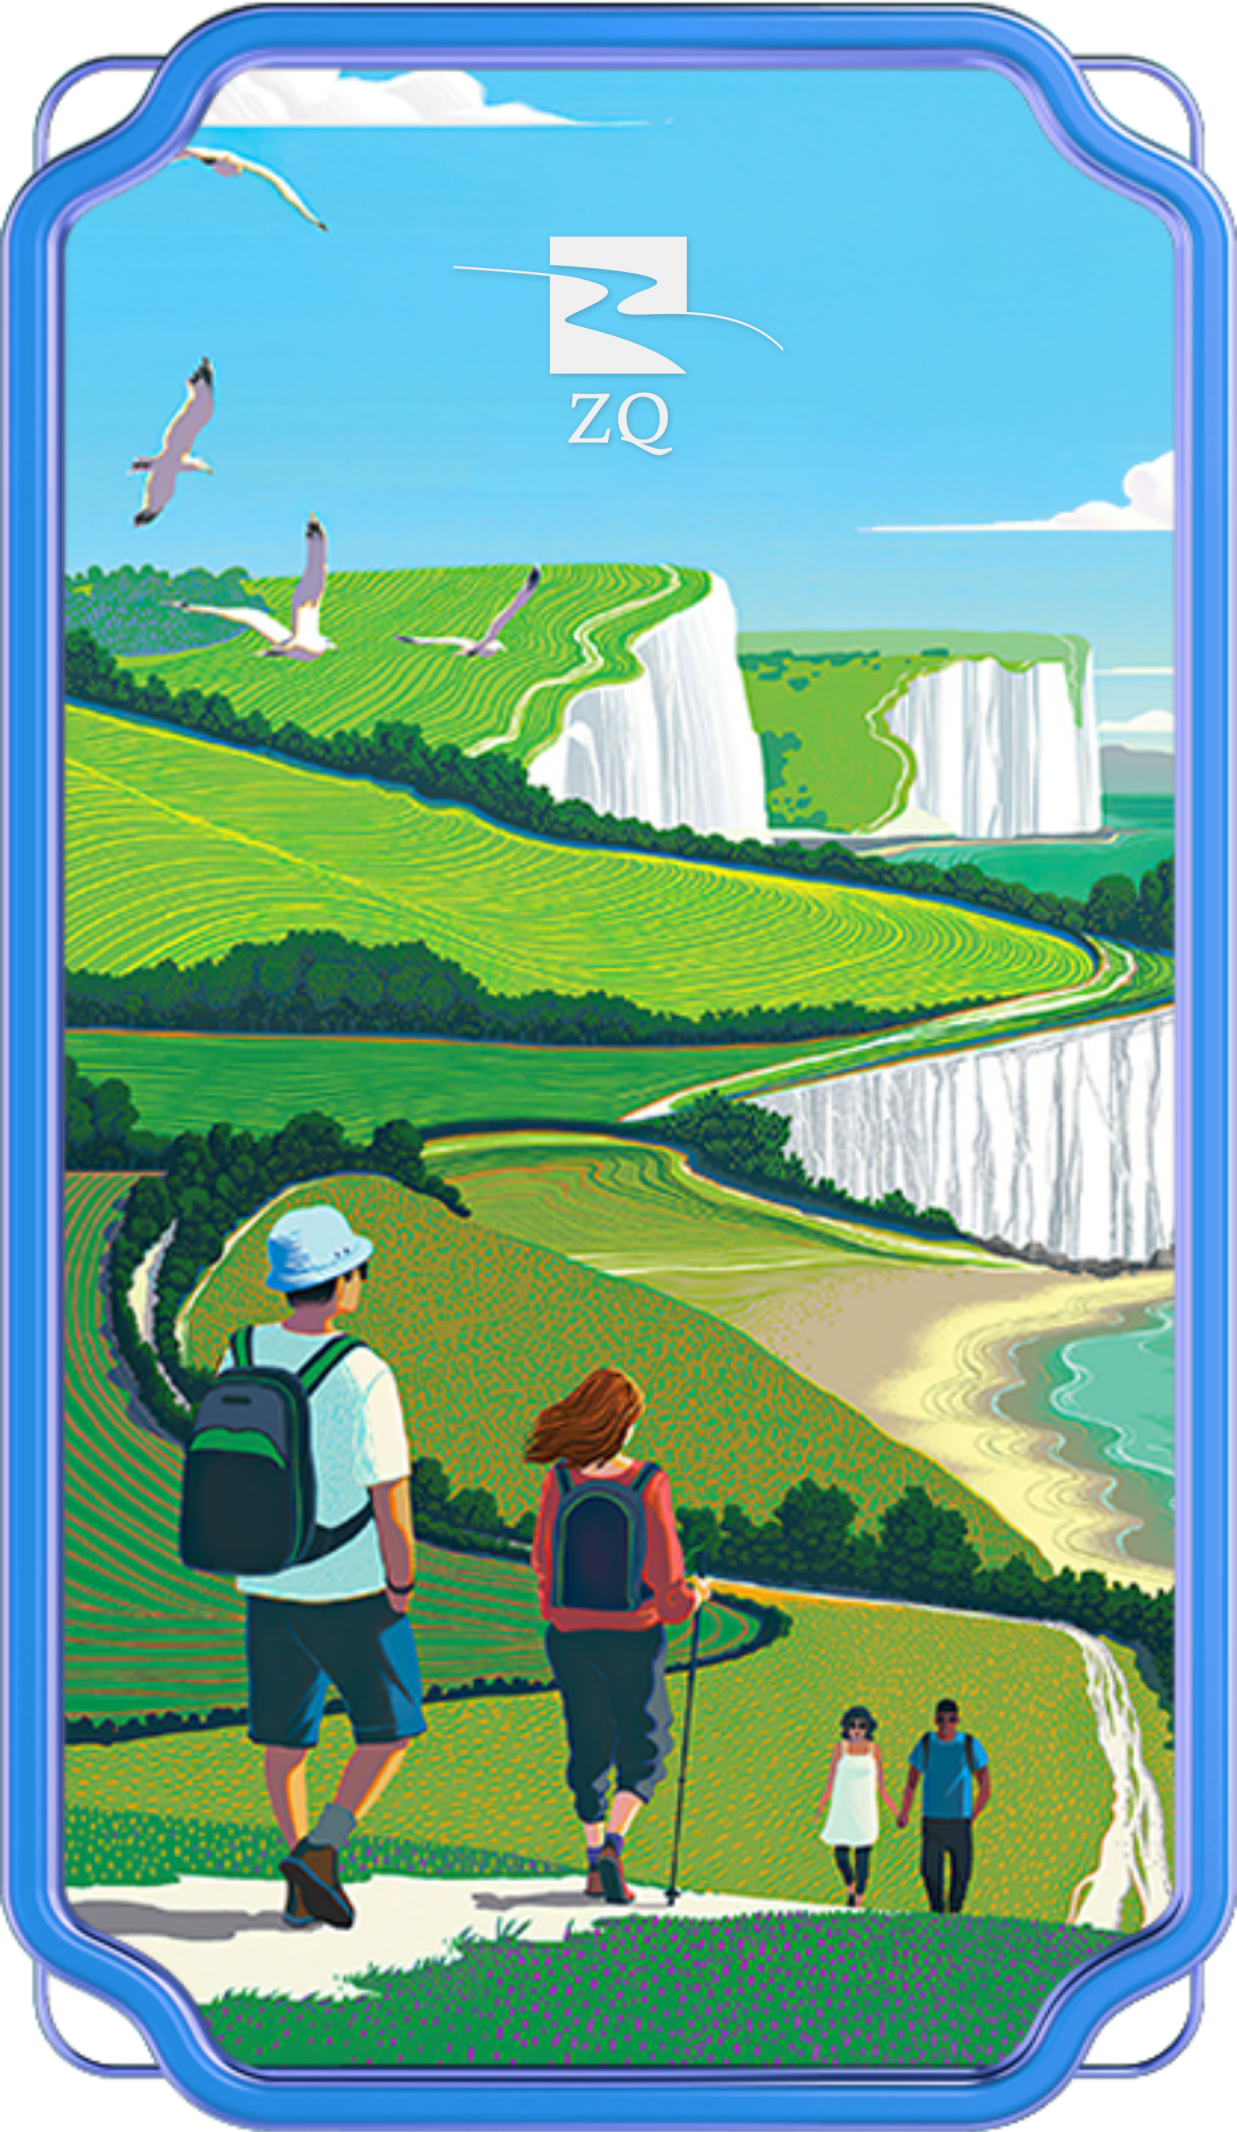 文旅通旅游生态发布第一款NFT旅游卡牌